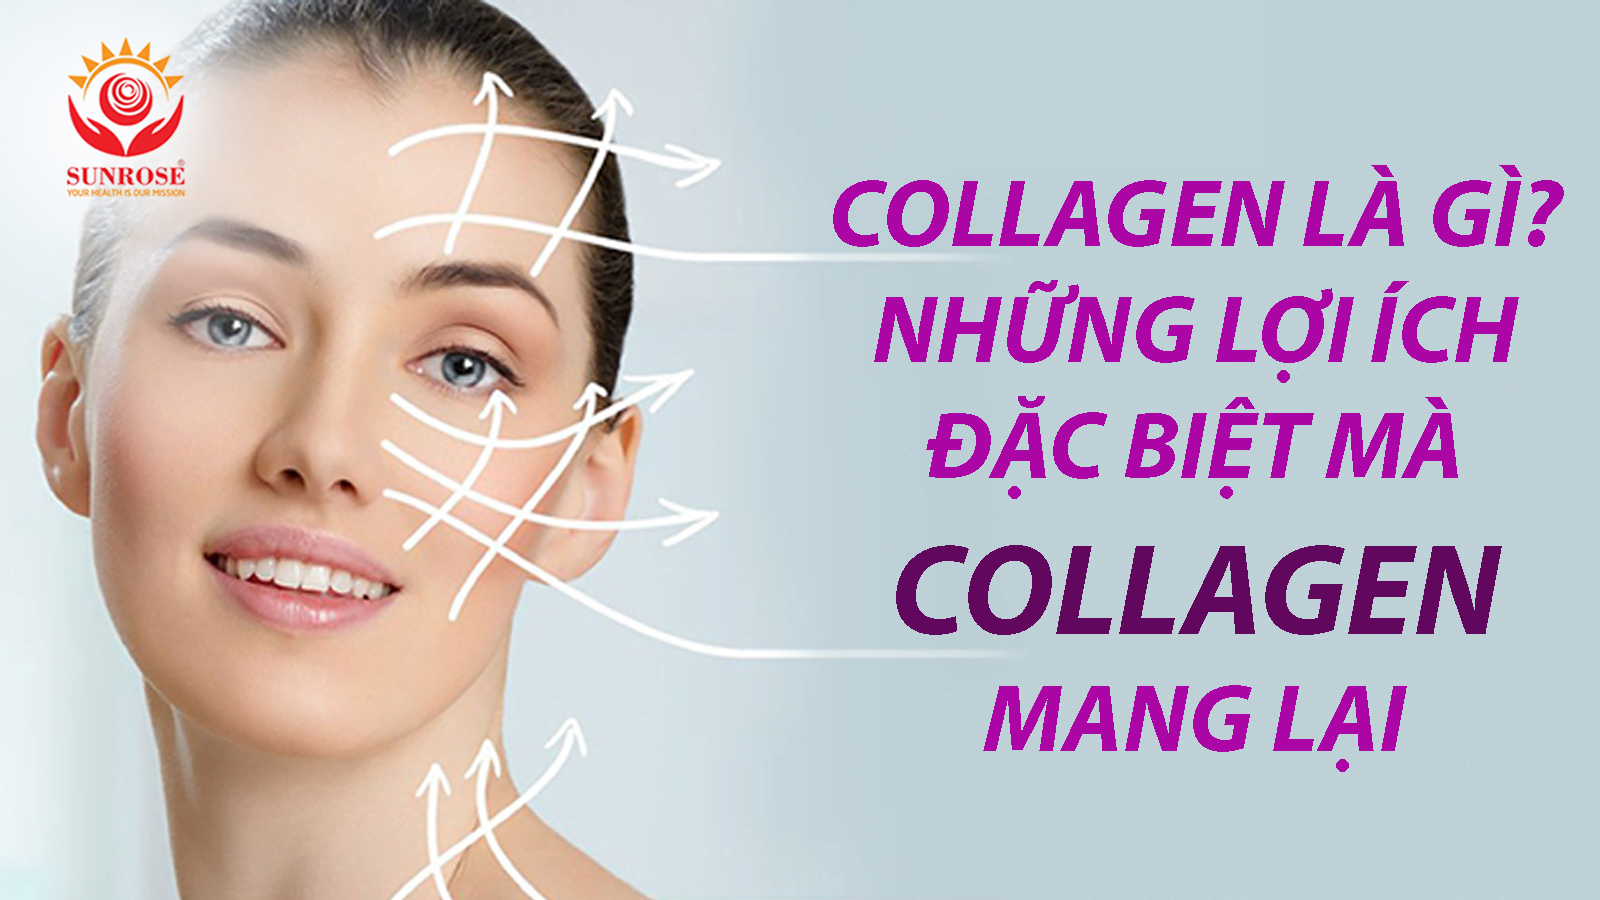 Collagen Là Gì? Những Lợi Ích Đặc Biệt Mà Collagen Mang Lại